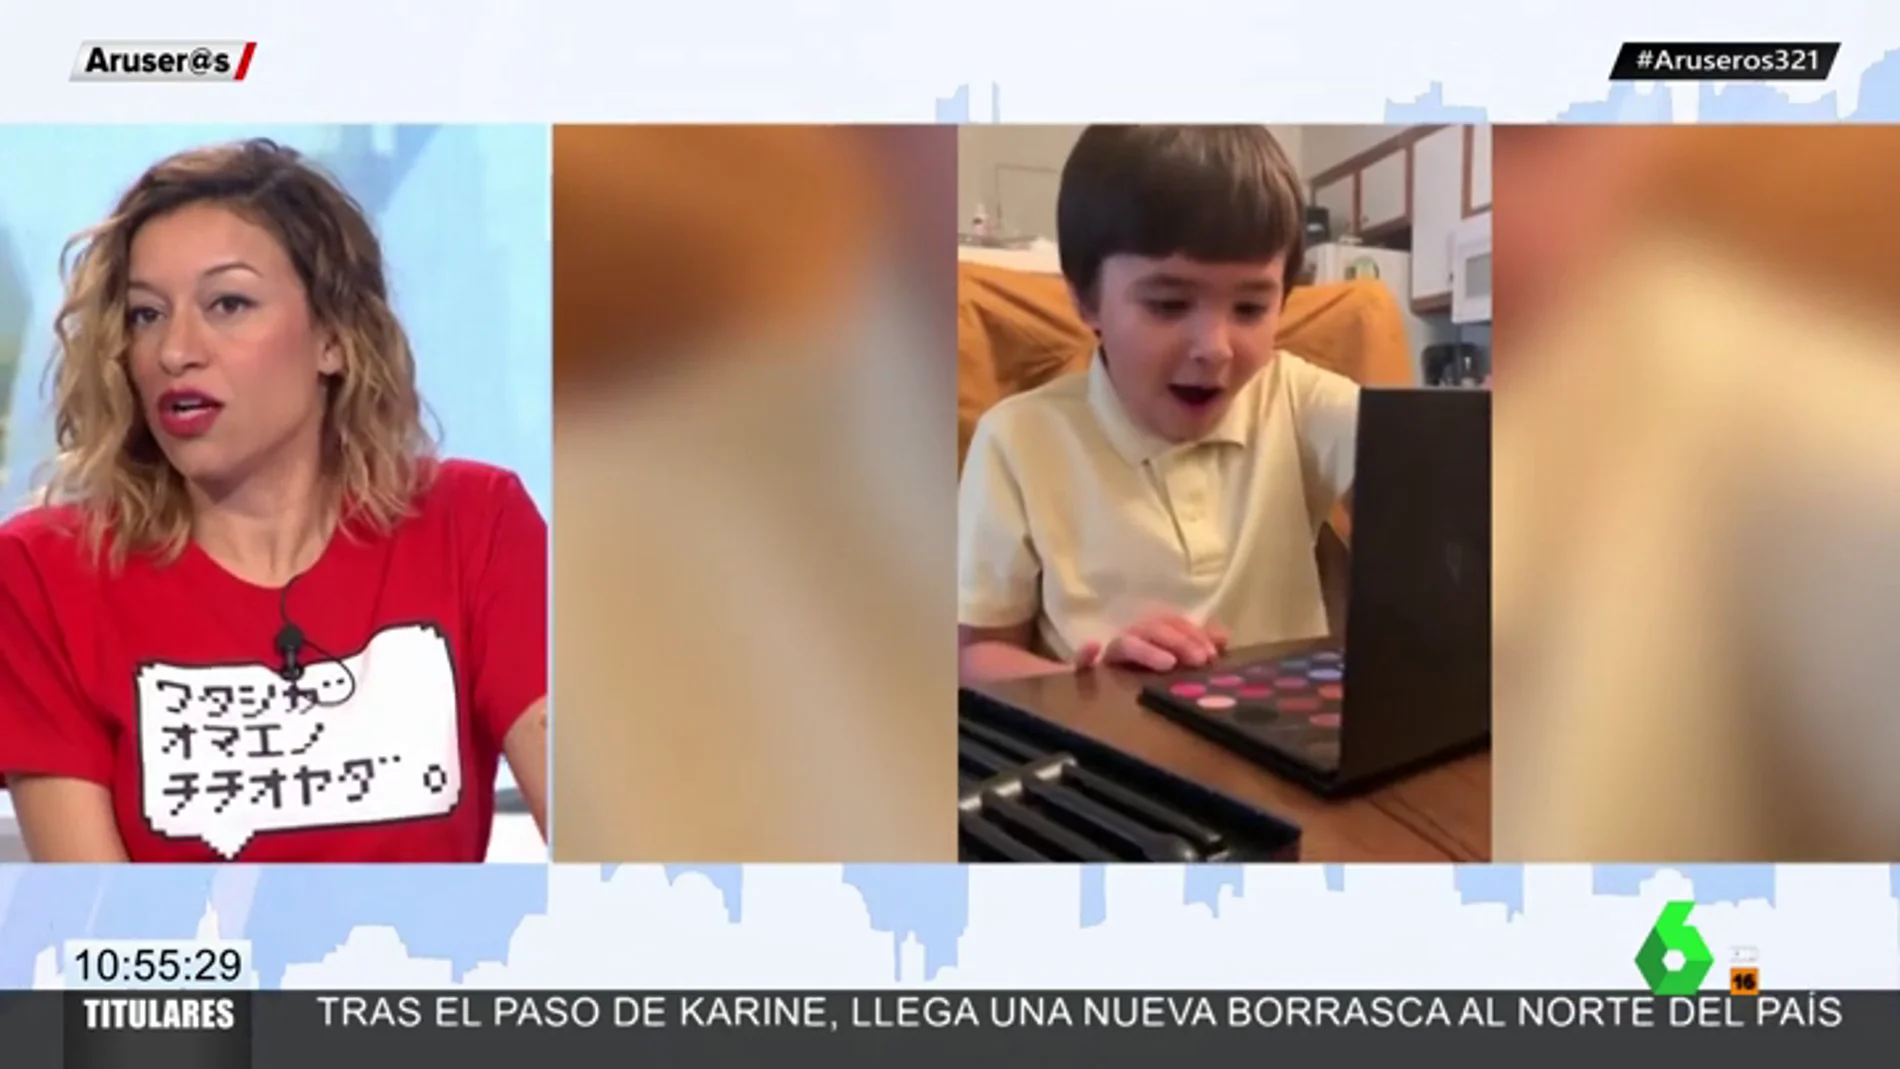 El tierno vídeo en el que un niño recibe maquillaje como regalo de cumpleaños genera debate en Twitter